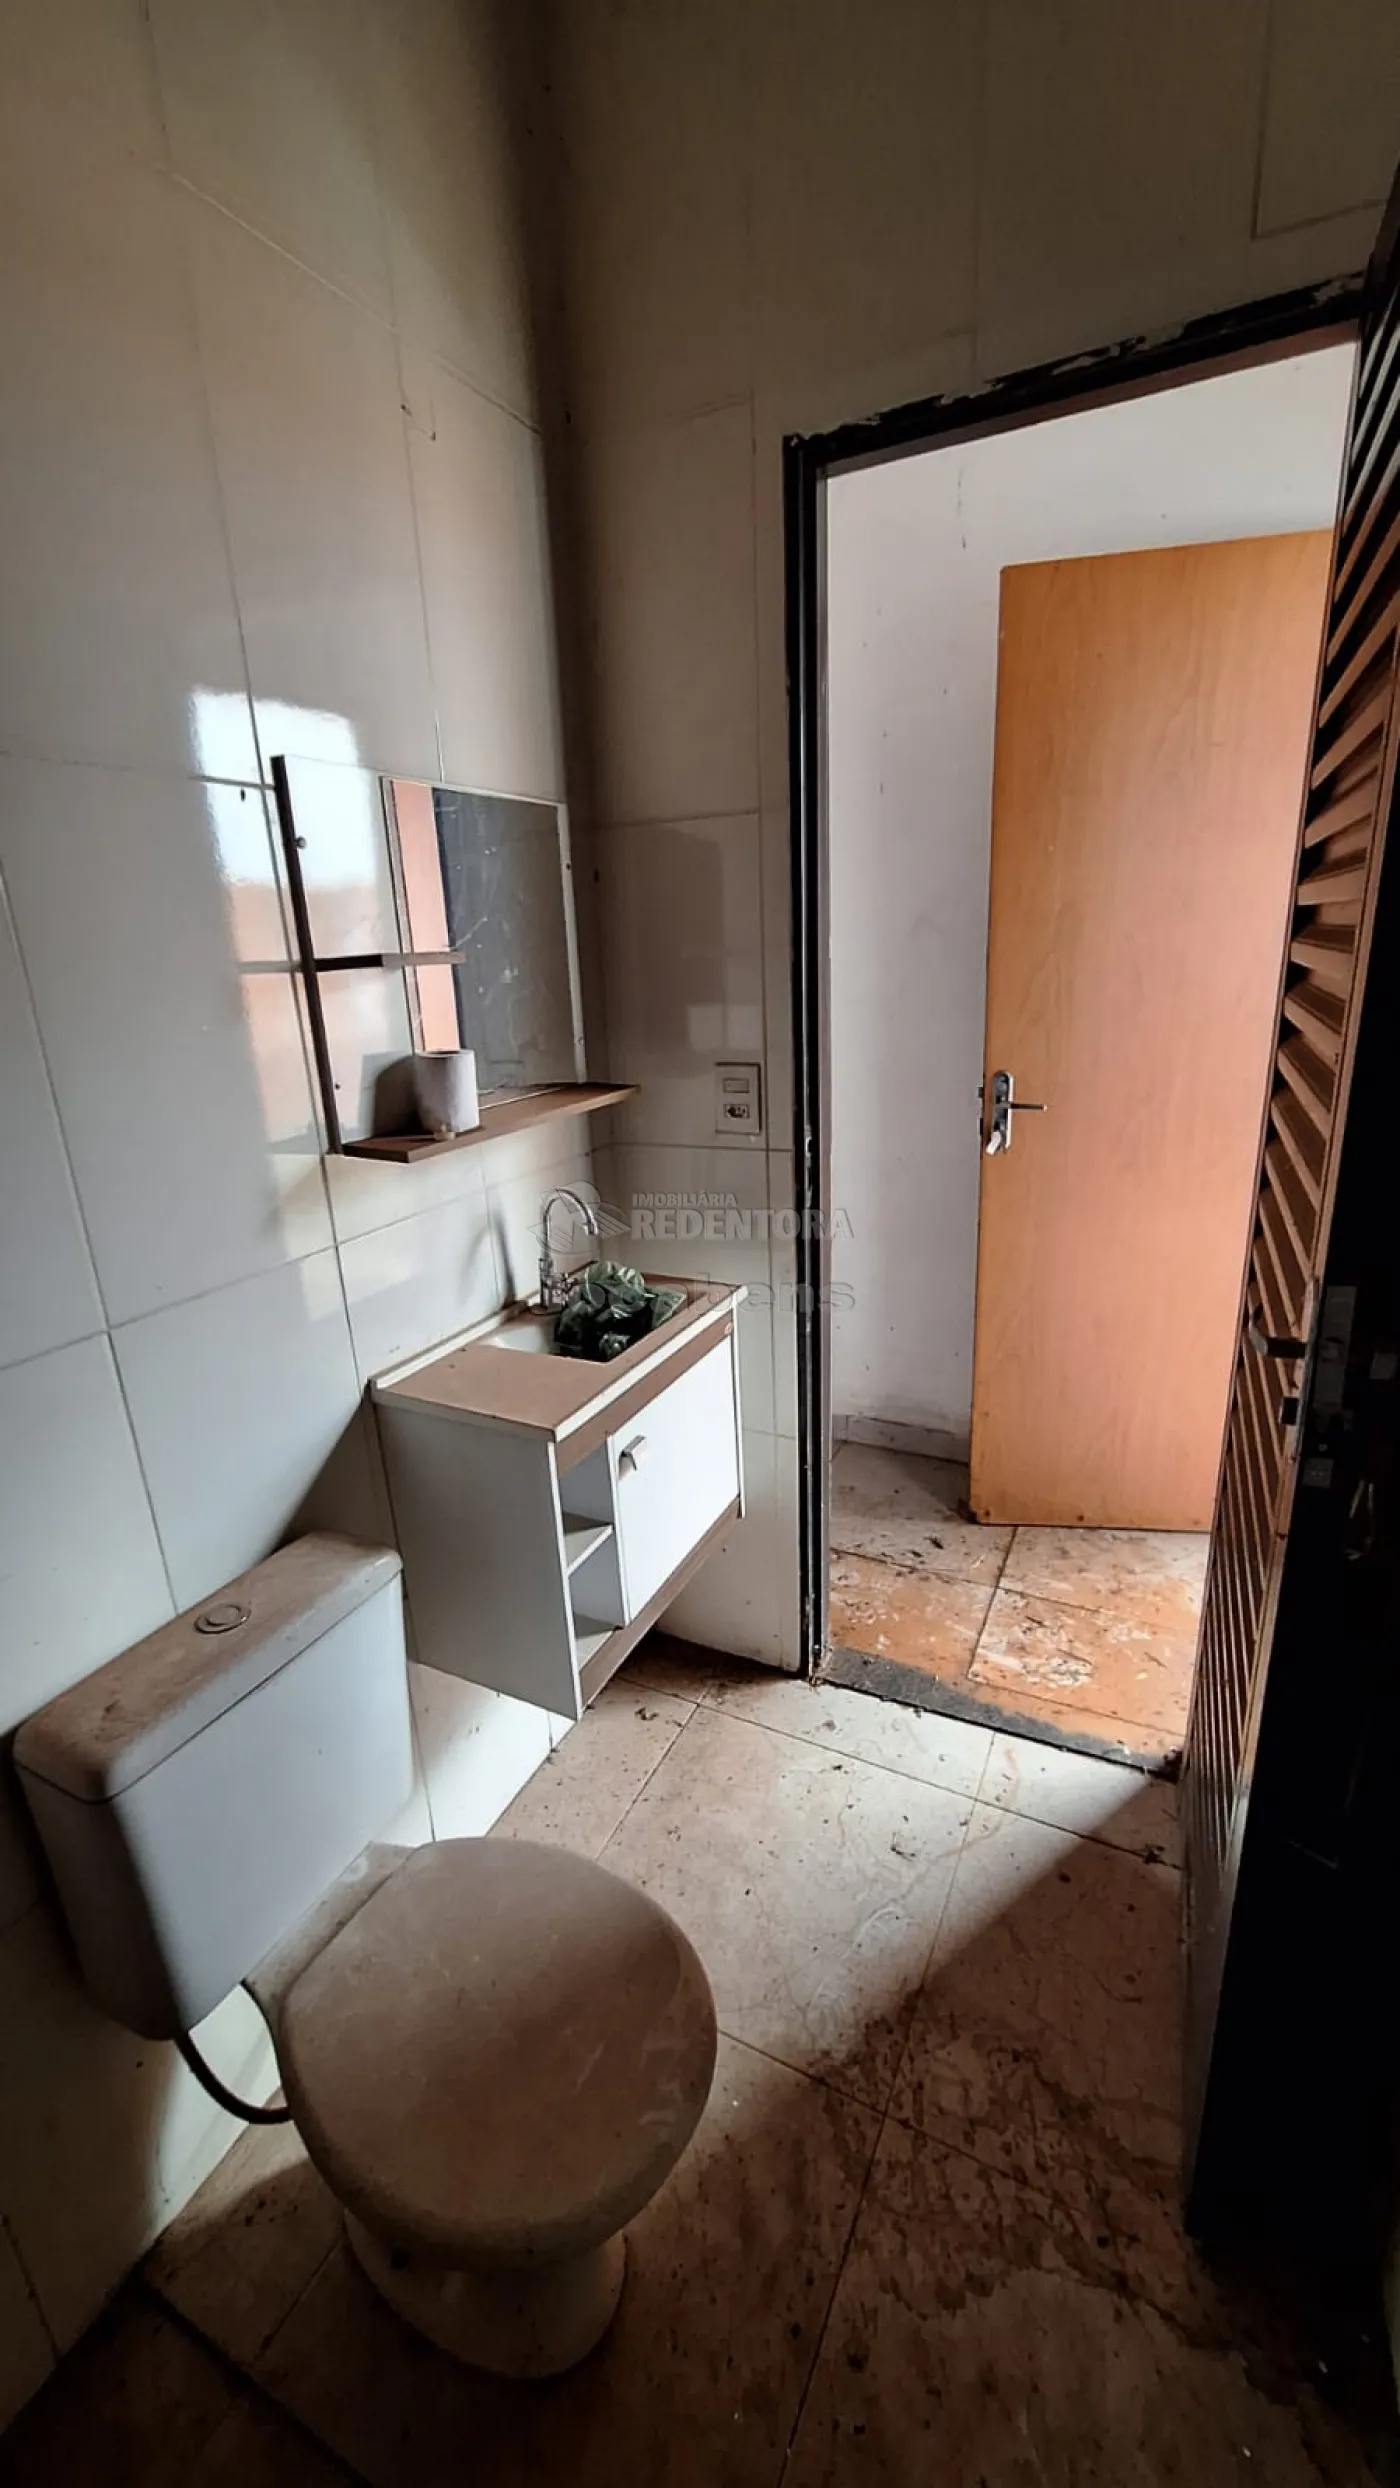 Alugar Casa / Padrão em São José do Rio Preto R$ 400,00 - Foto 8